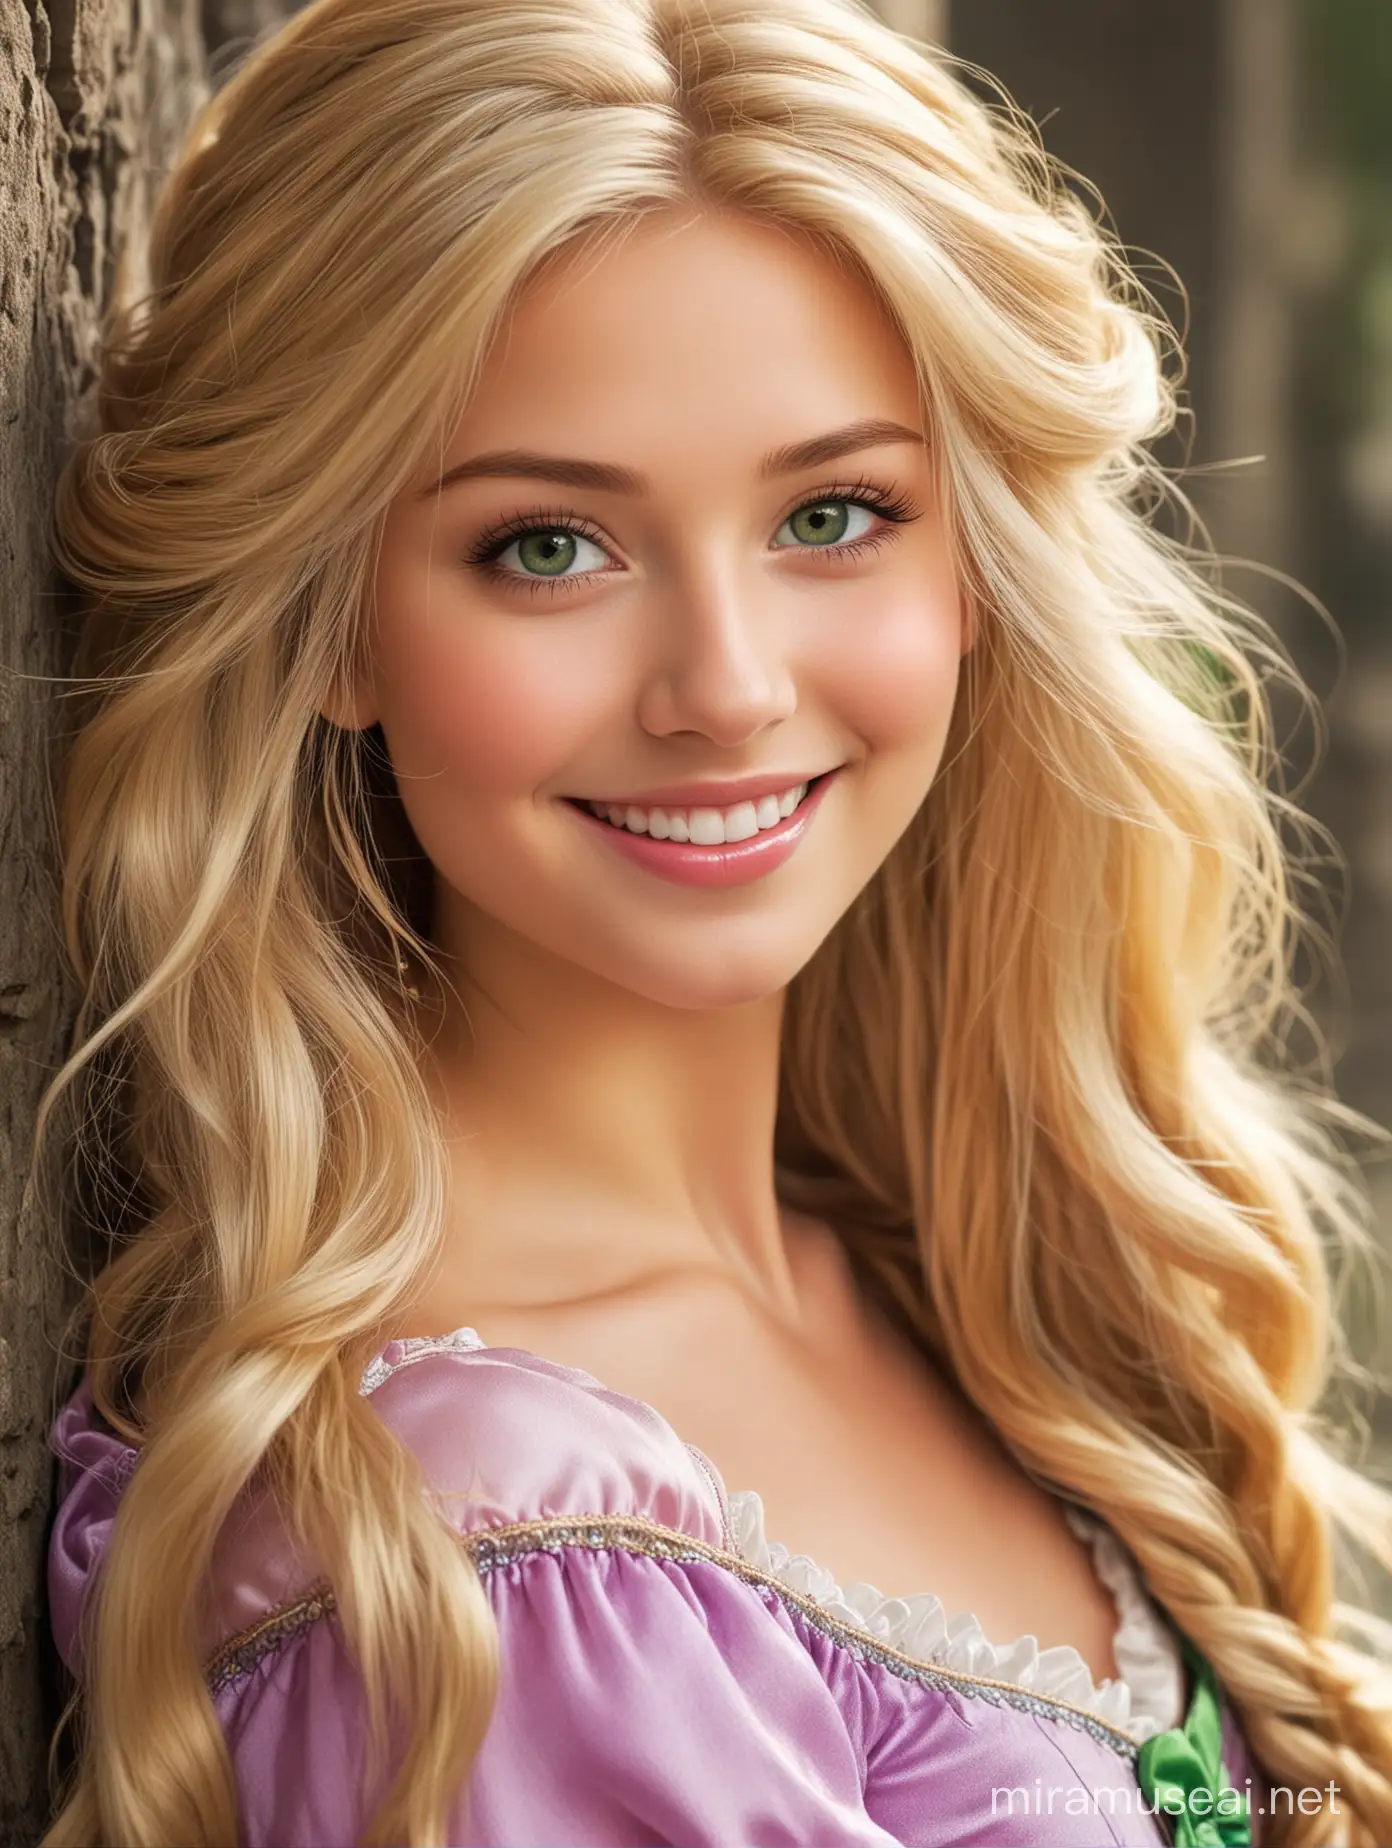 gorgeous princess Rapunzel. Blonde hair green eyes. smiling at you